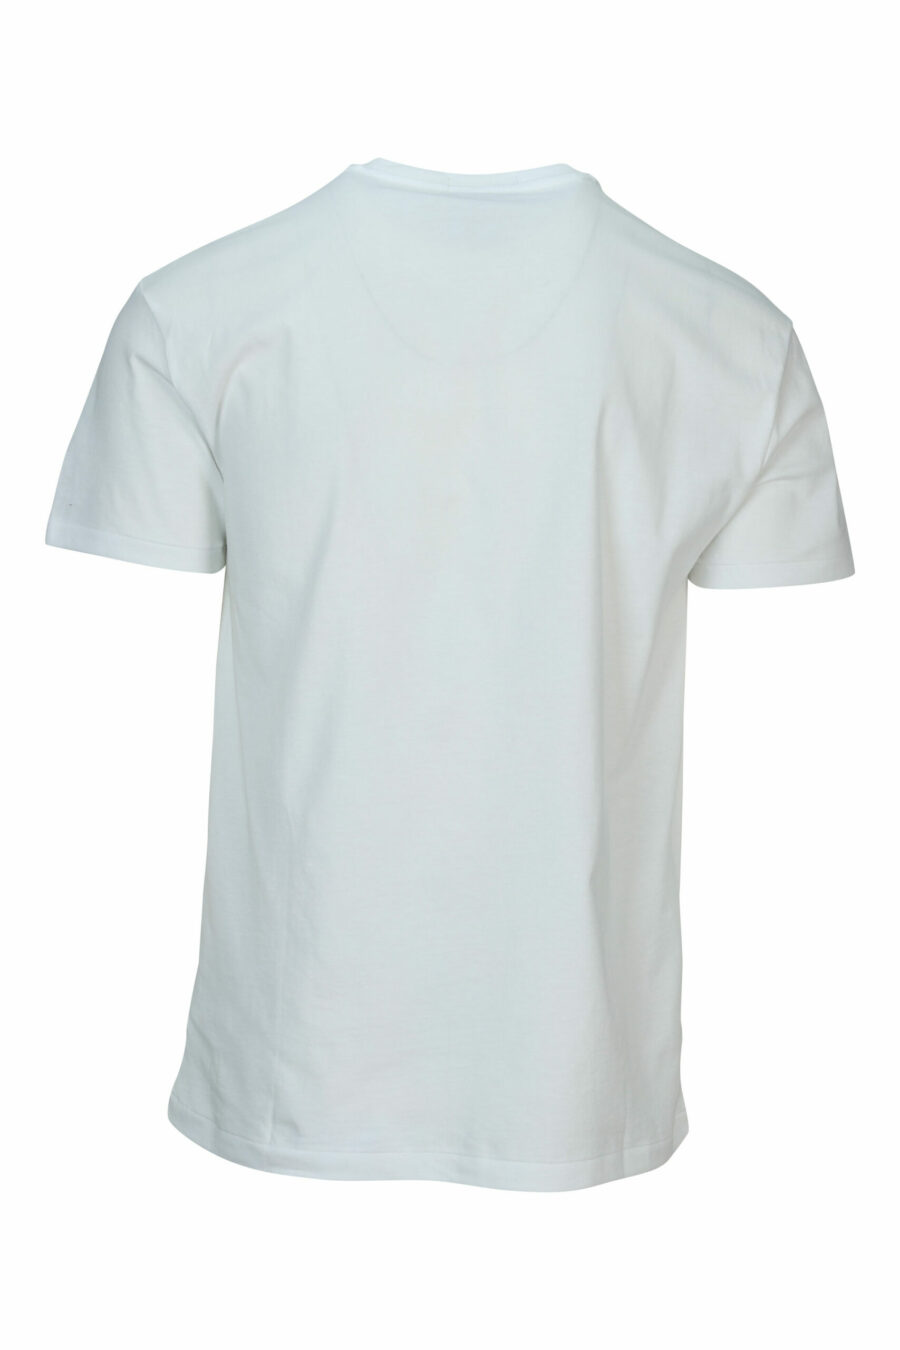 T-shirt branca com maxilogo "polo bear" roupa de praia - 3616535843479 1 à escala